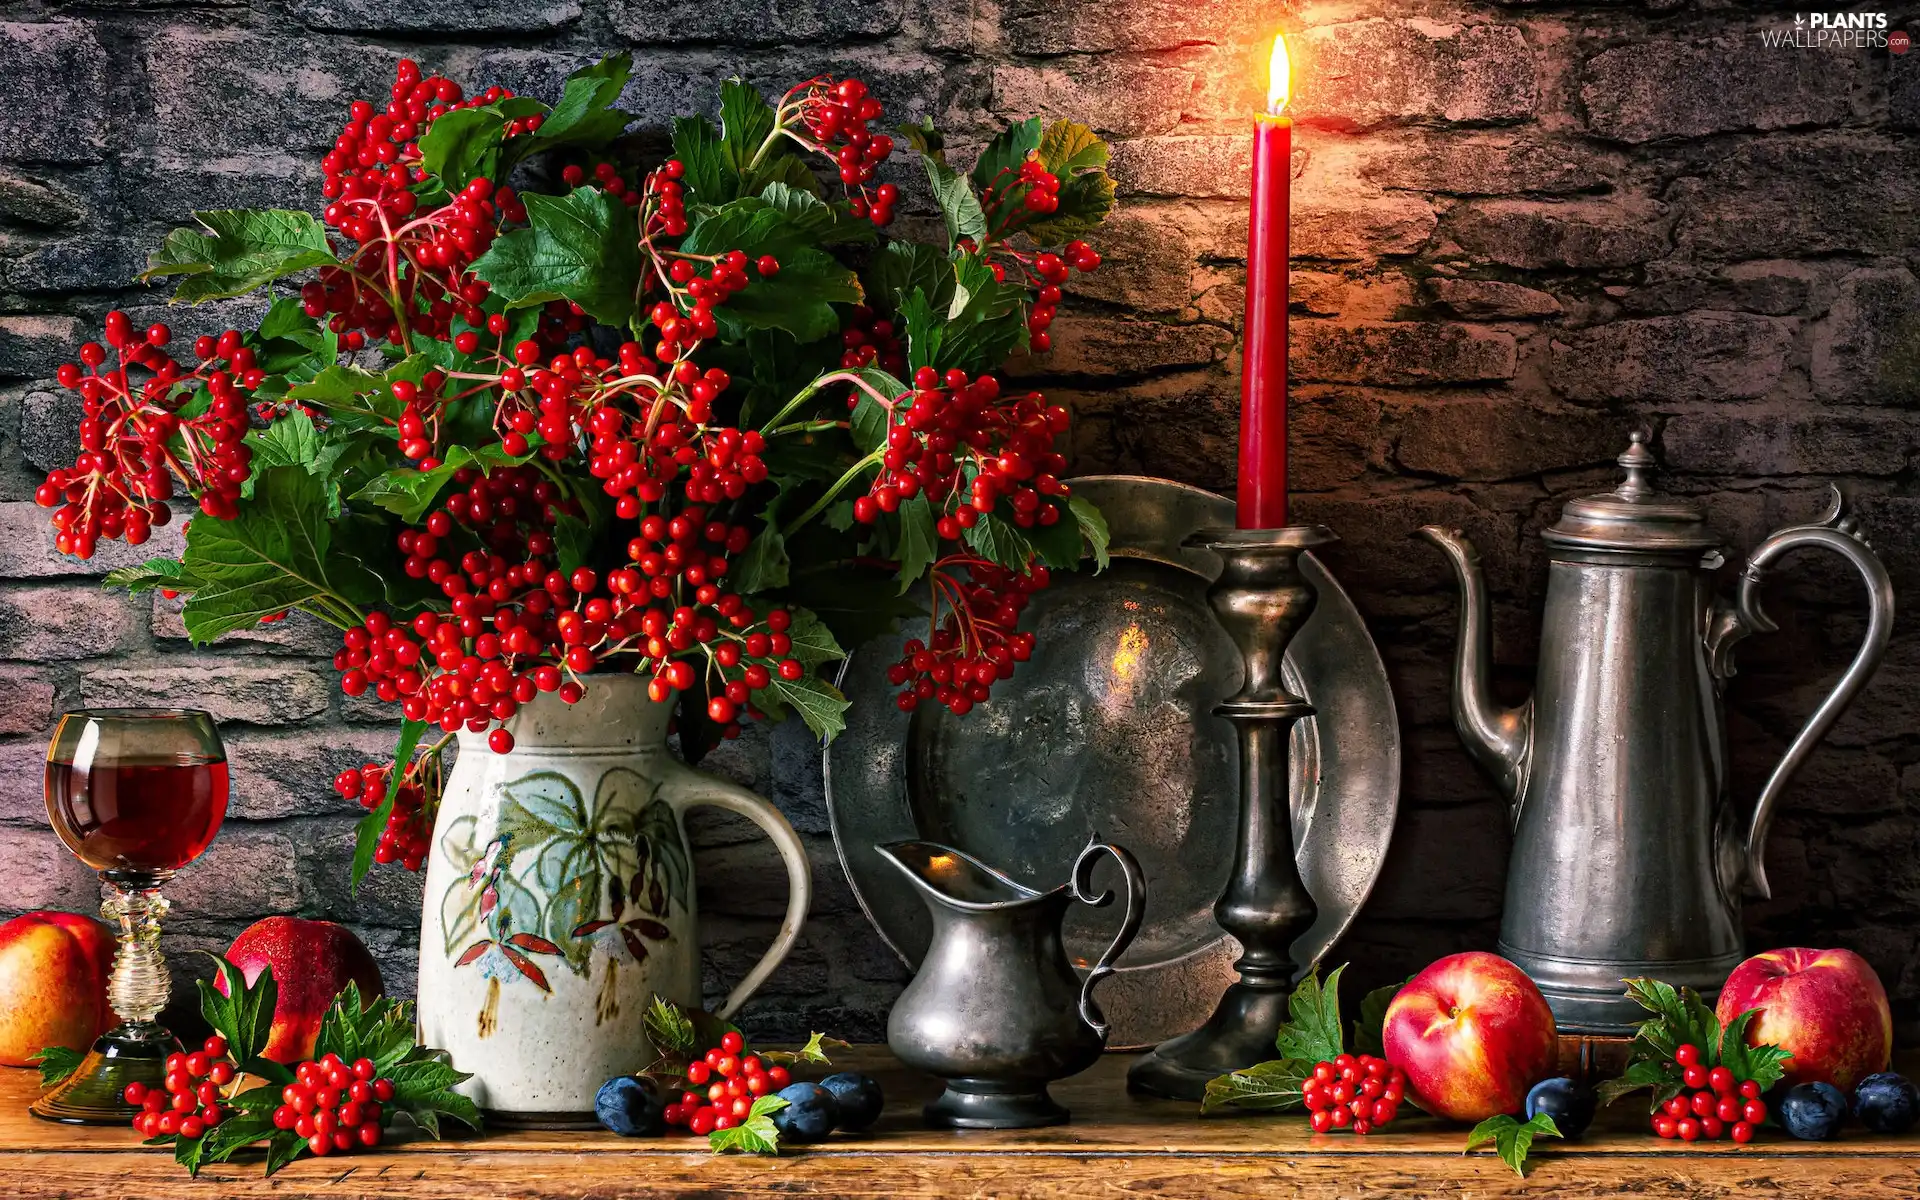 candle, bouquet, glass, Viburnum, composition, jug, apples